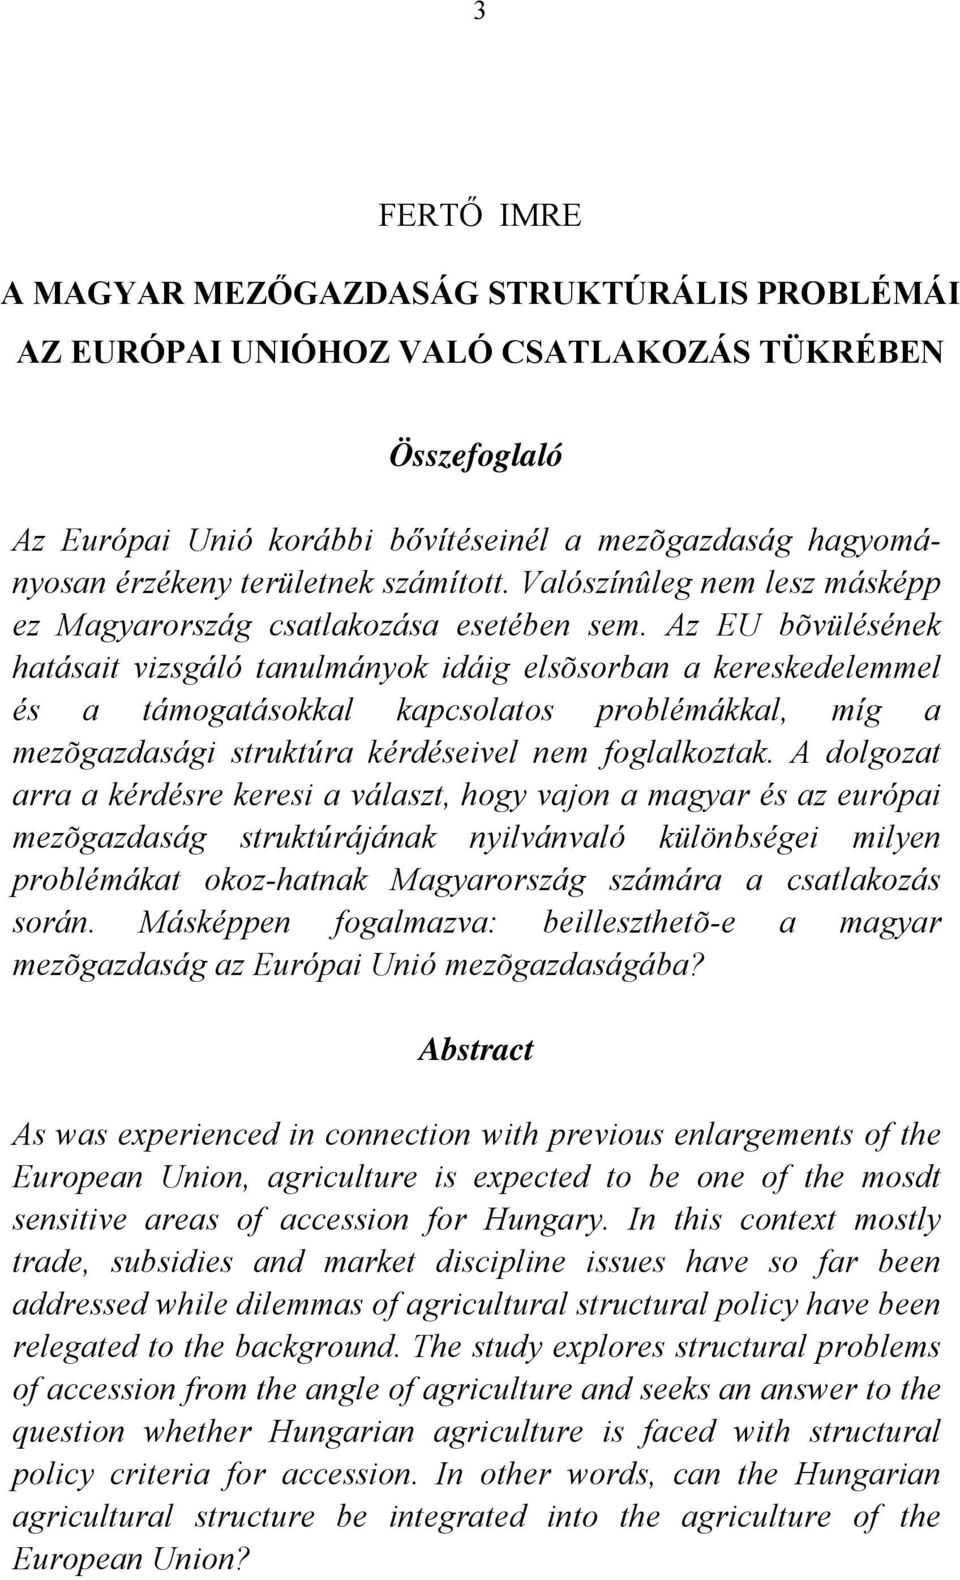 Az EU bõvülésének hatásait vizsgáló tanulmányok idáig elsõsorban a kereskedelemmel és a támogatásokkal kapcsolatos problémákkal, míg a mezõgazdasági struktúra kérdéseivel nem foglalkoztak.